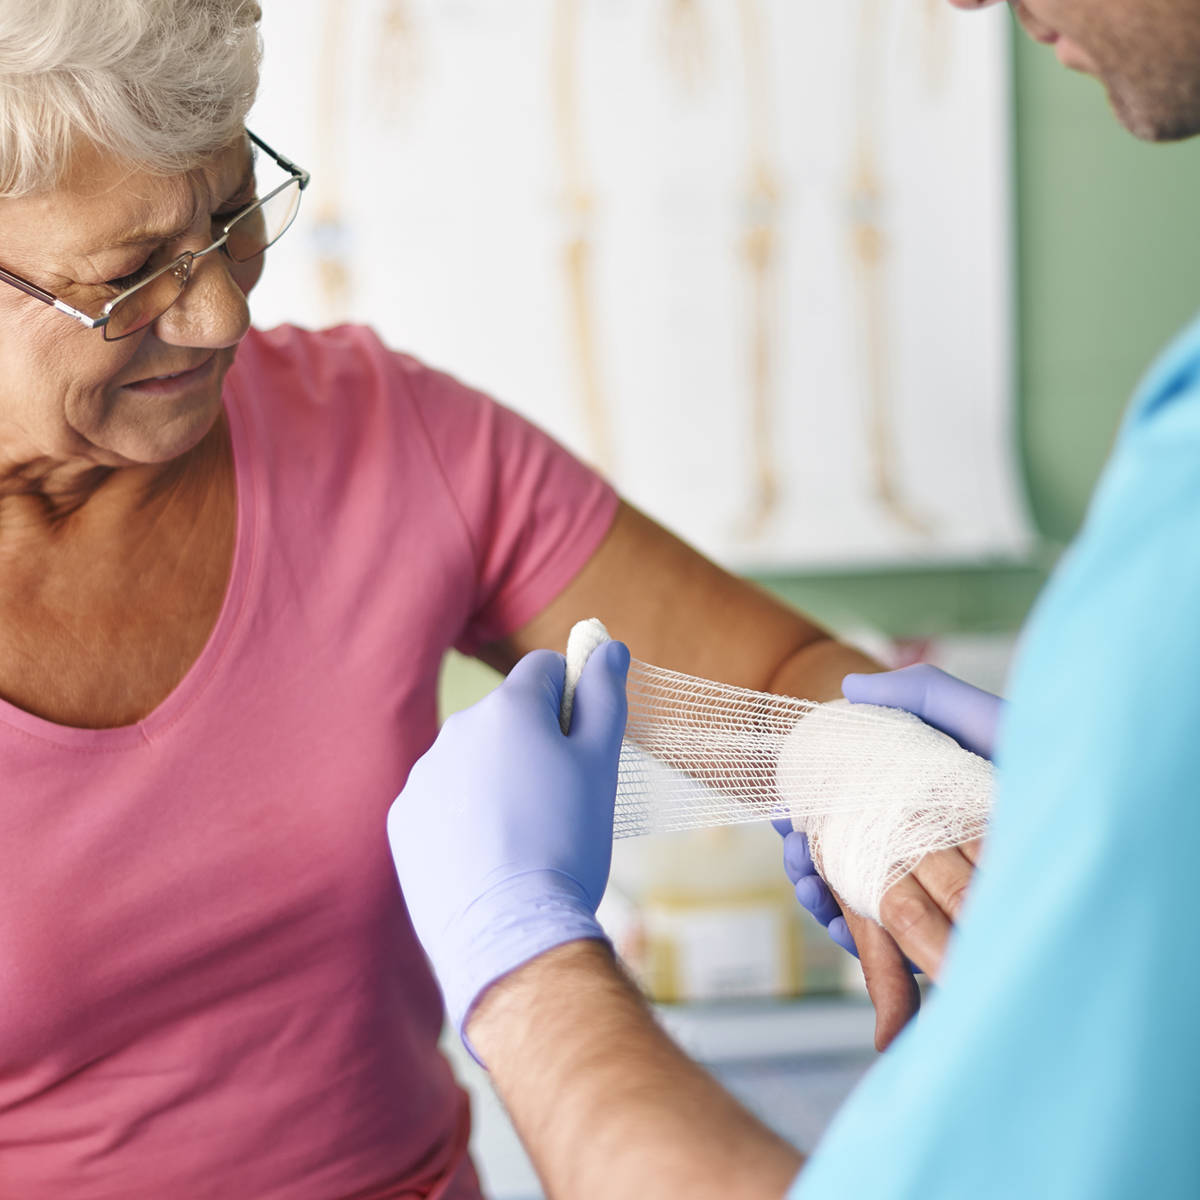 Nurse putting bandage on elderly person